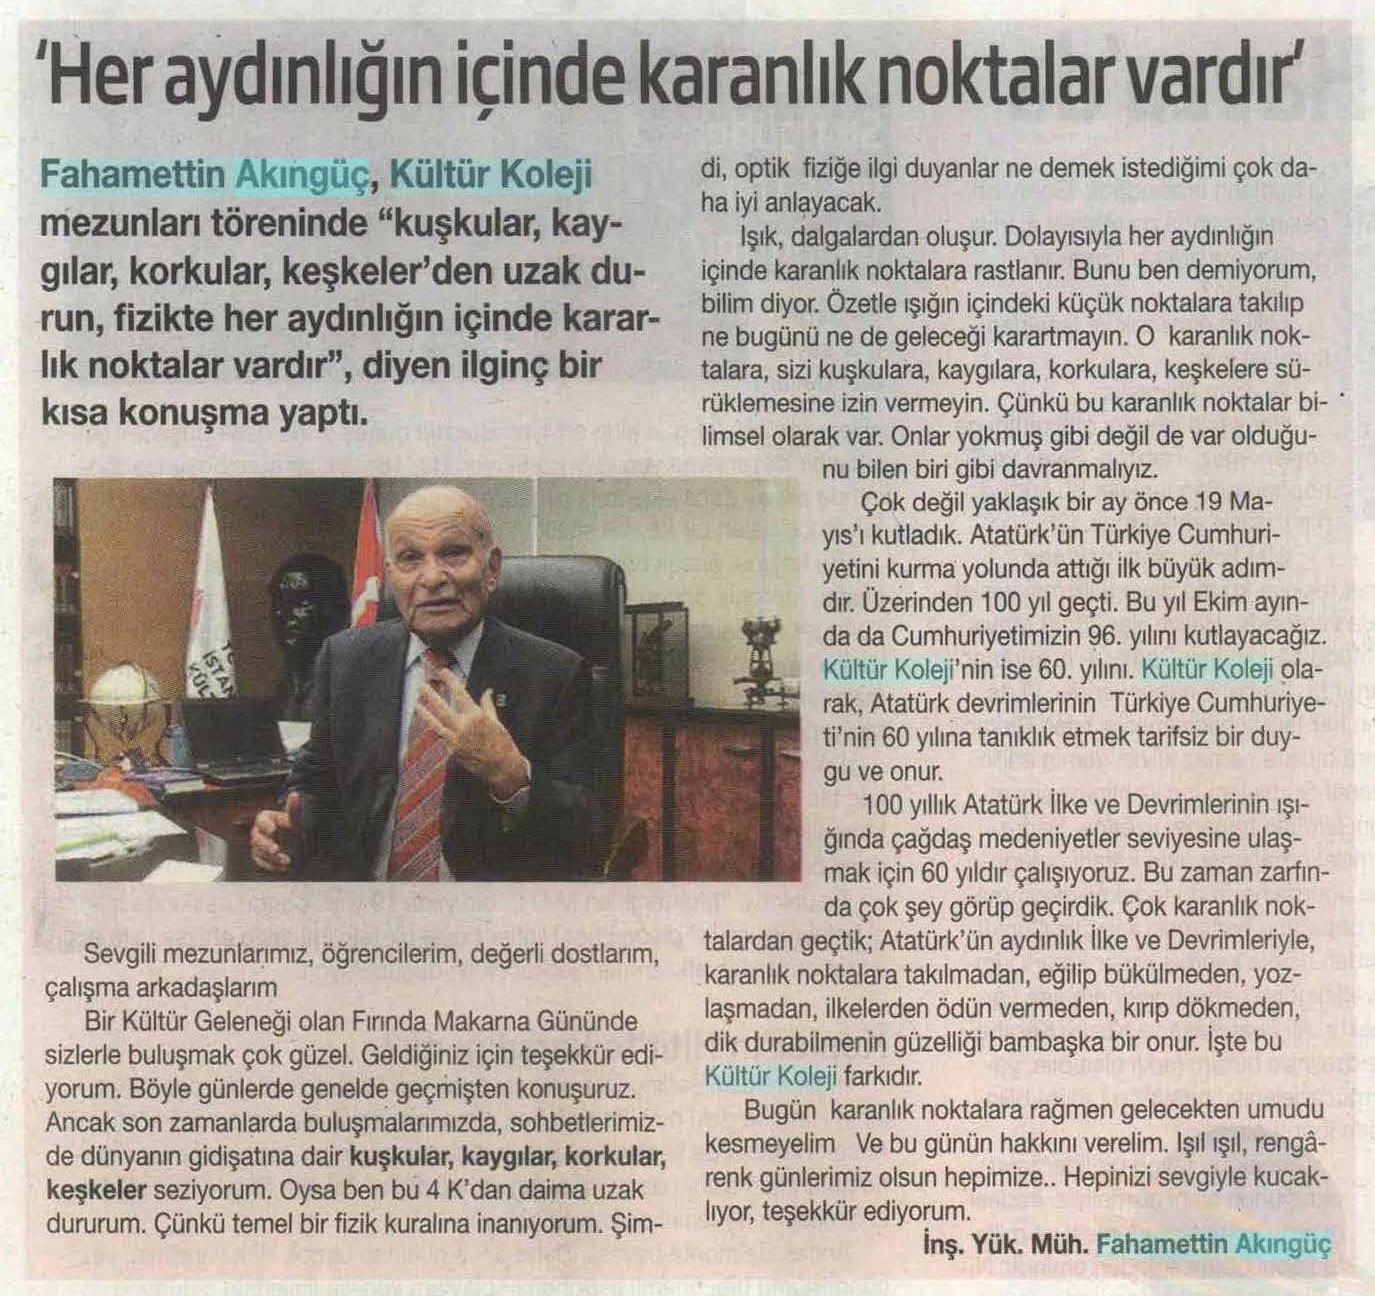 İstanbul Kültür Üniversitesi Mütevelli Heyeti Onursal Başkanı İnş. Yük. Müh. Fahamettin Akıngüç’ün HBT'deki yazısı